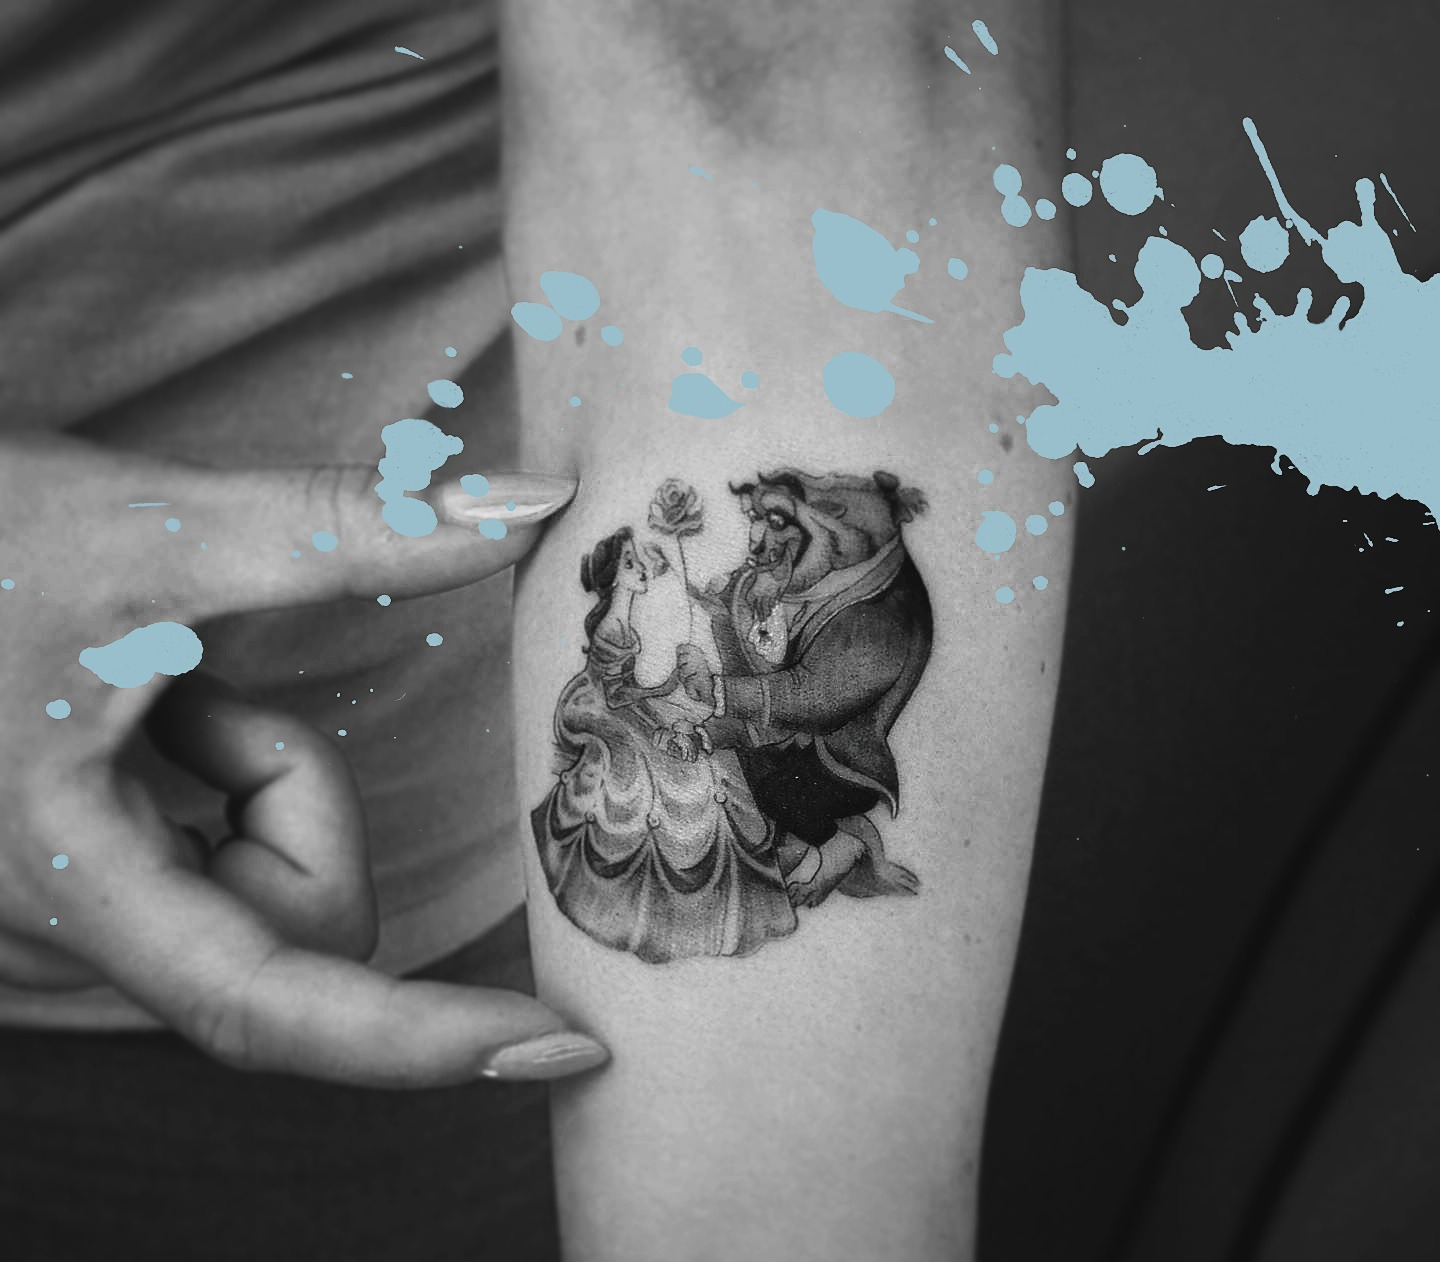 Mikrorealistyczny tatuaż postaci z bajki Piękna i Bestia